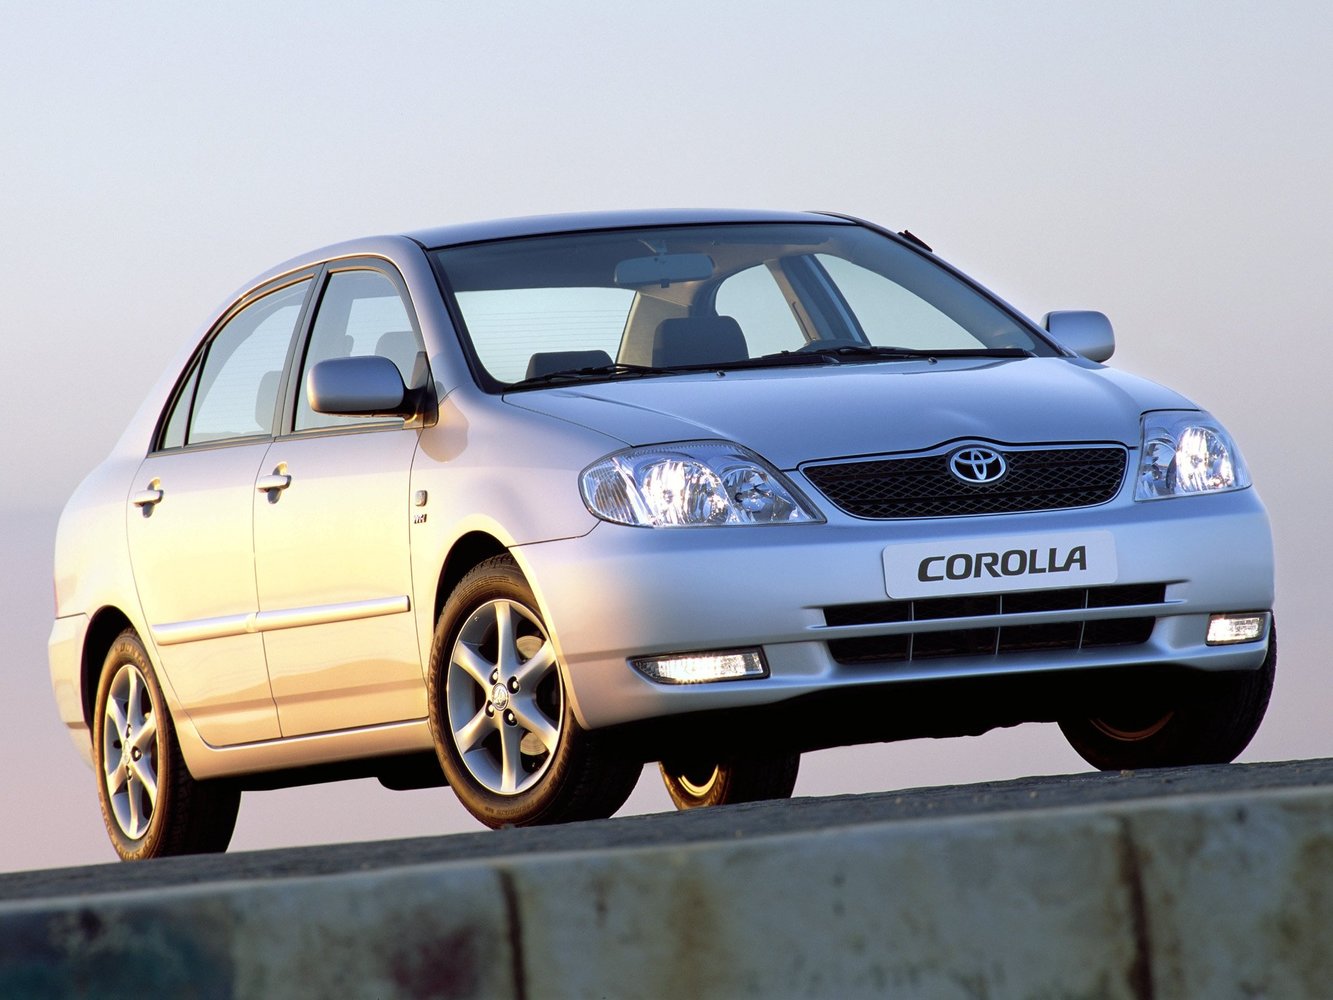 седан Toyota Corolla 2001 - 2004г выпуска модификация 1.3 AT (88 л.с.)